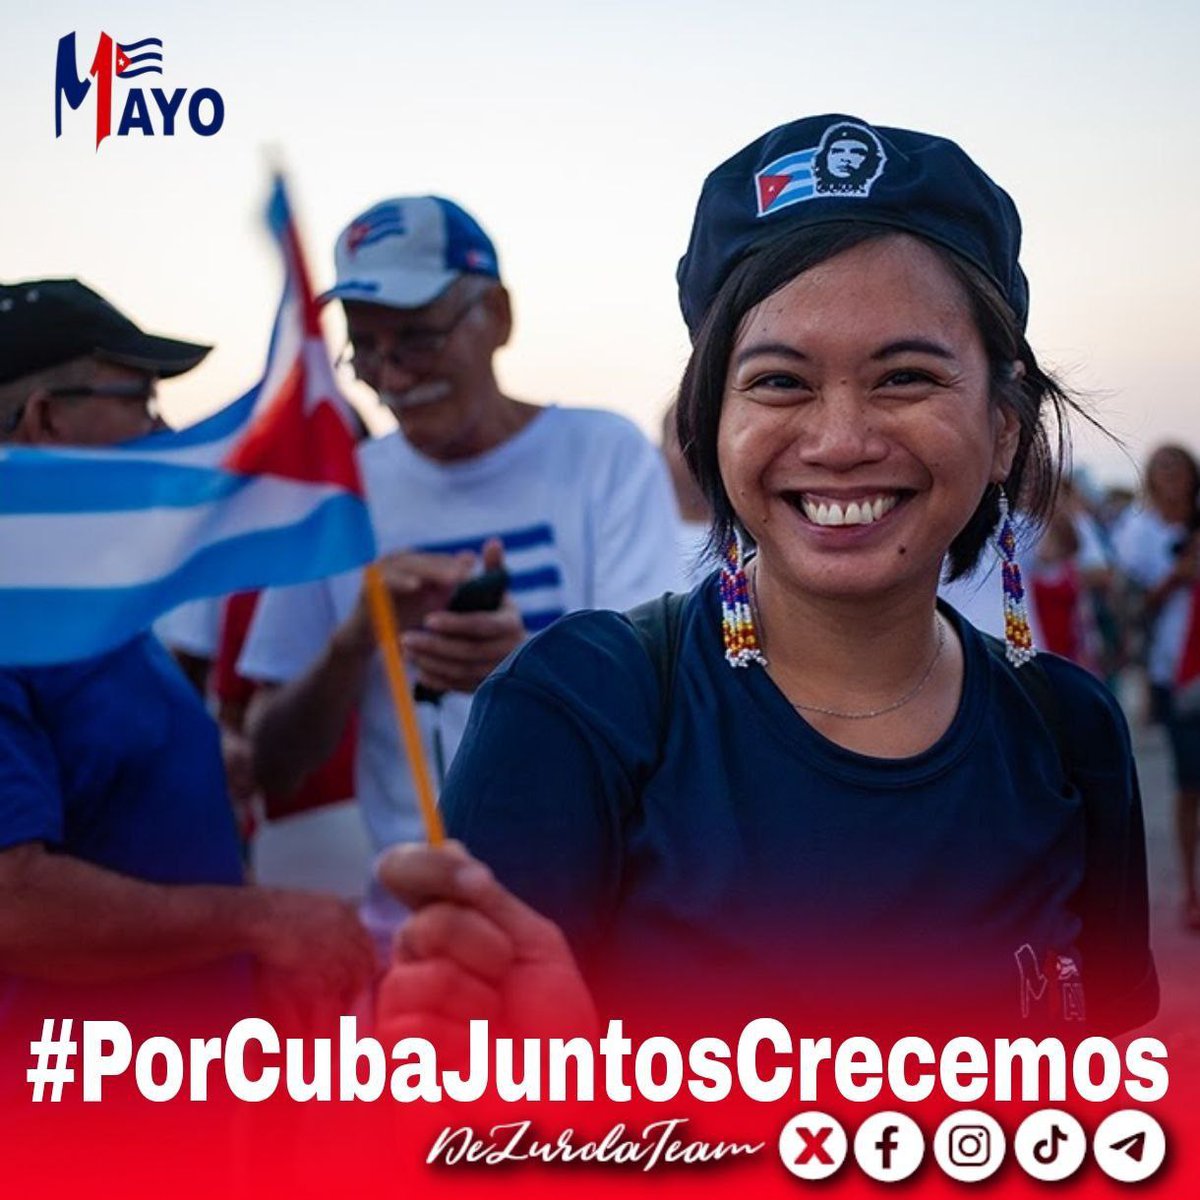 Buenas tardes 🇨🇺
Ya casi vamos calentando los motores para este #1Mayo.
#UnLatidoPor te invita a encontrar un desfile repleto de cubanos festejando que #PorCubaJuntosCreamos el Socialismo!  #Moron #LatirAvileño